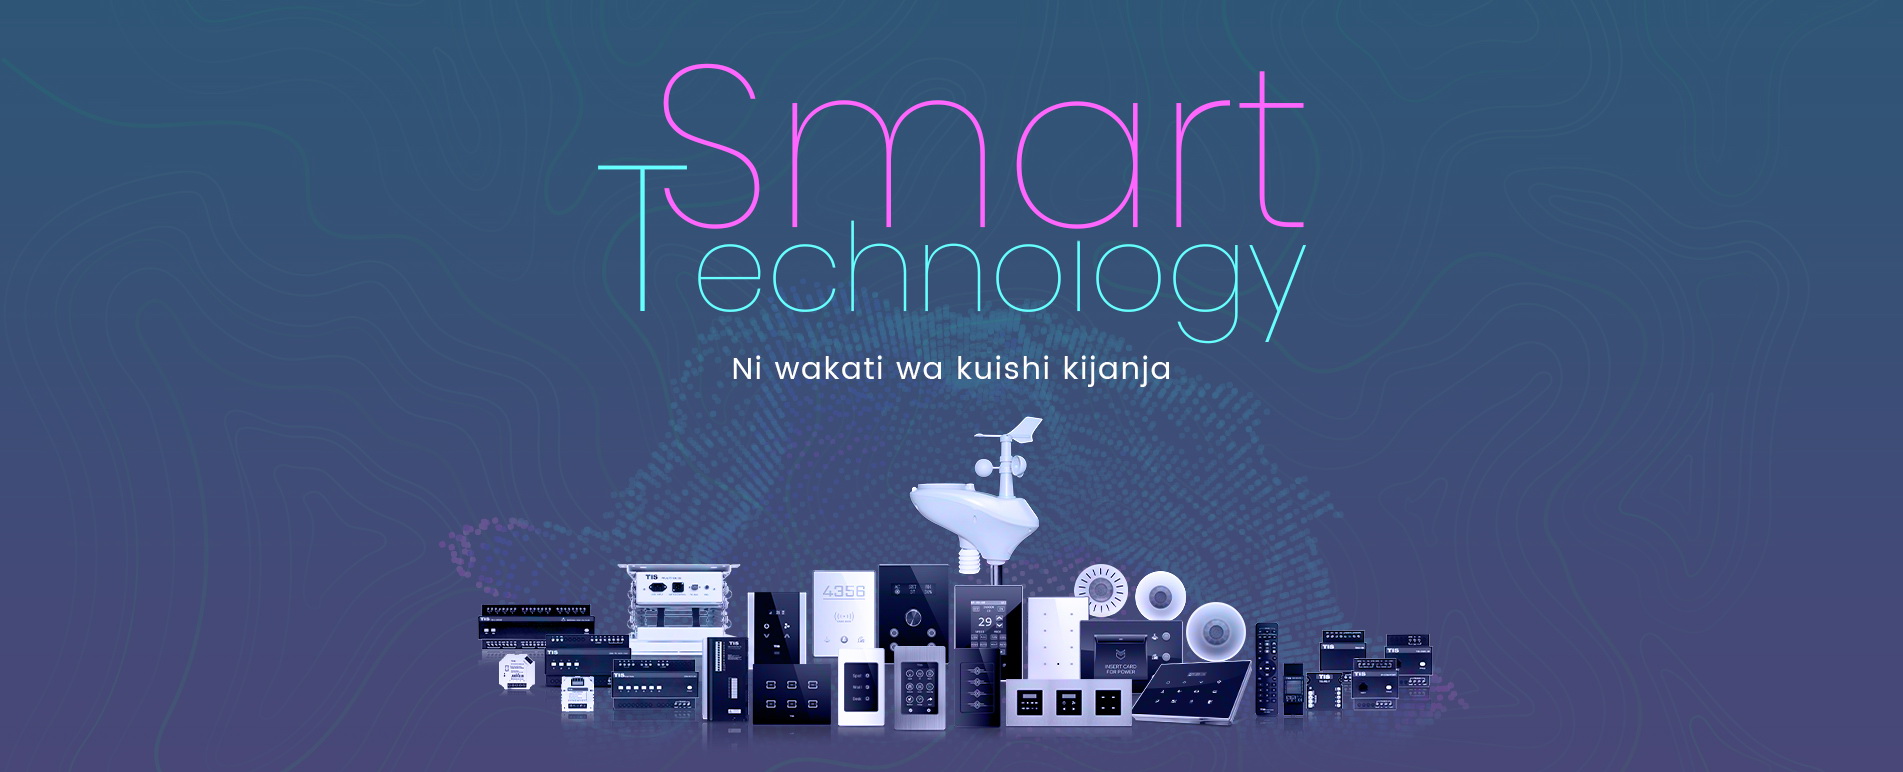 App za bure kutoka TIS Smart Home – simamia chumba chako ukiwa mbali 